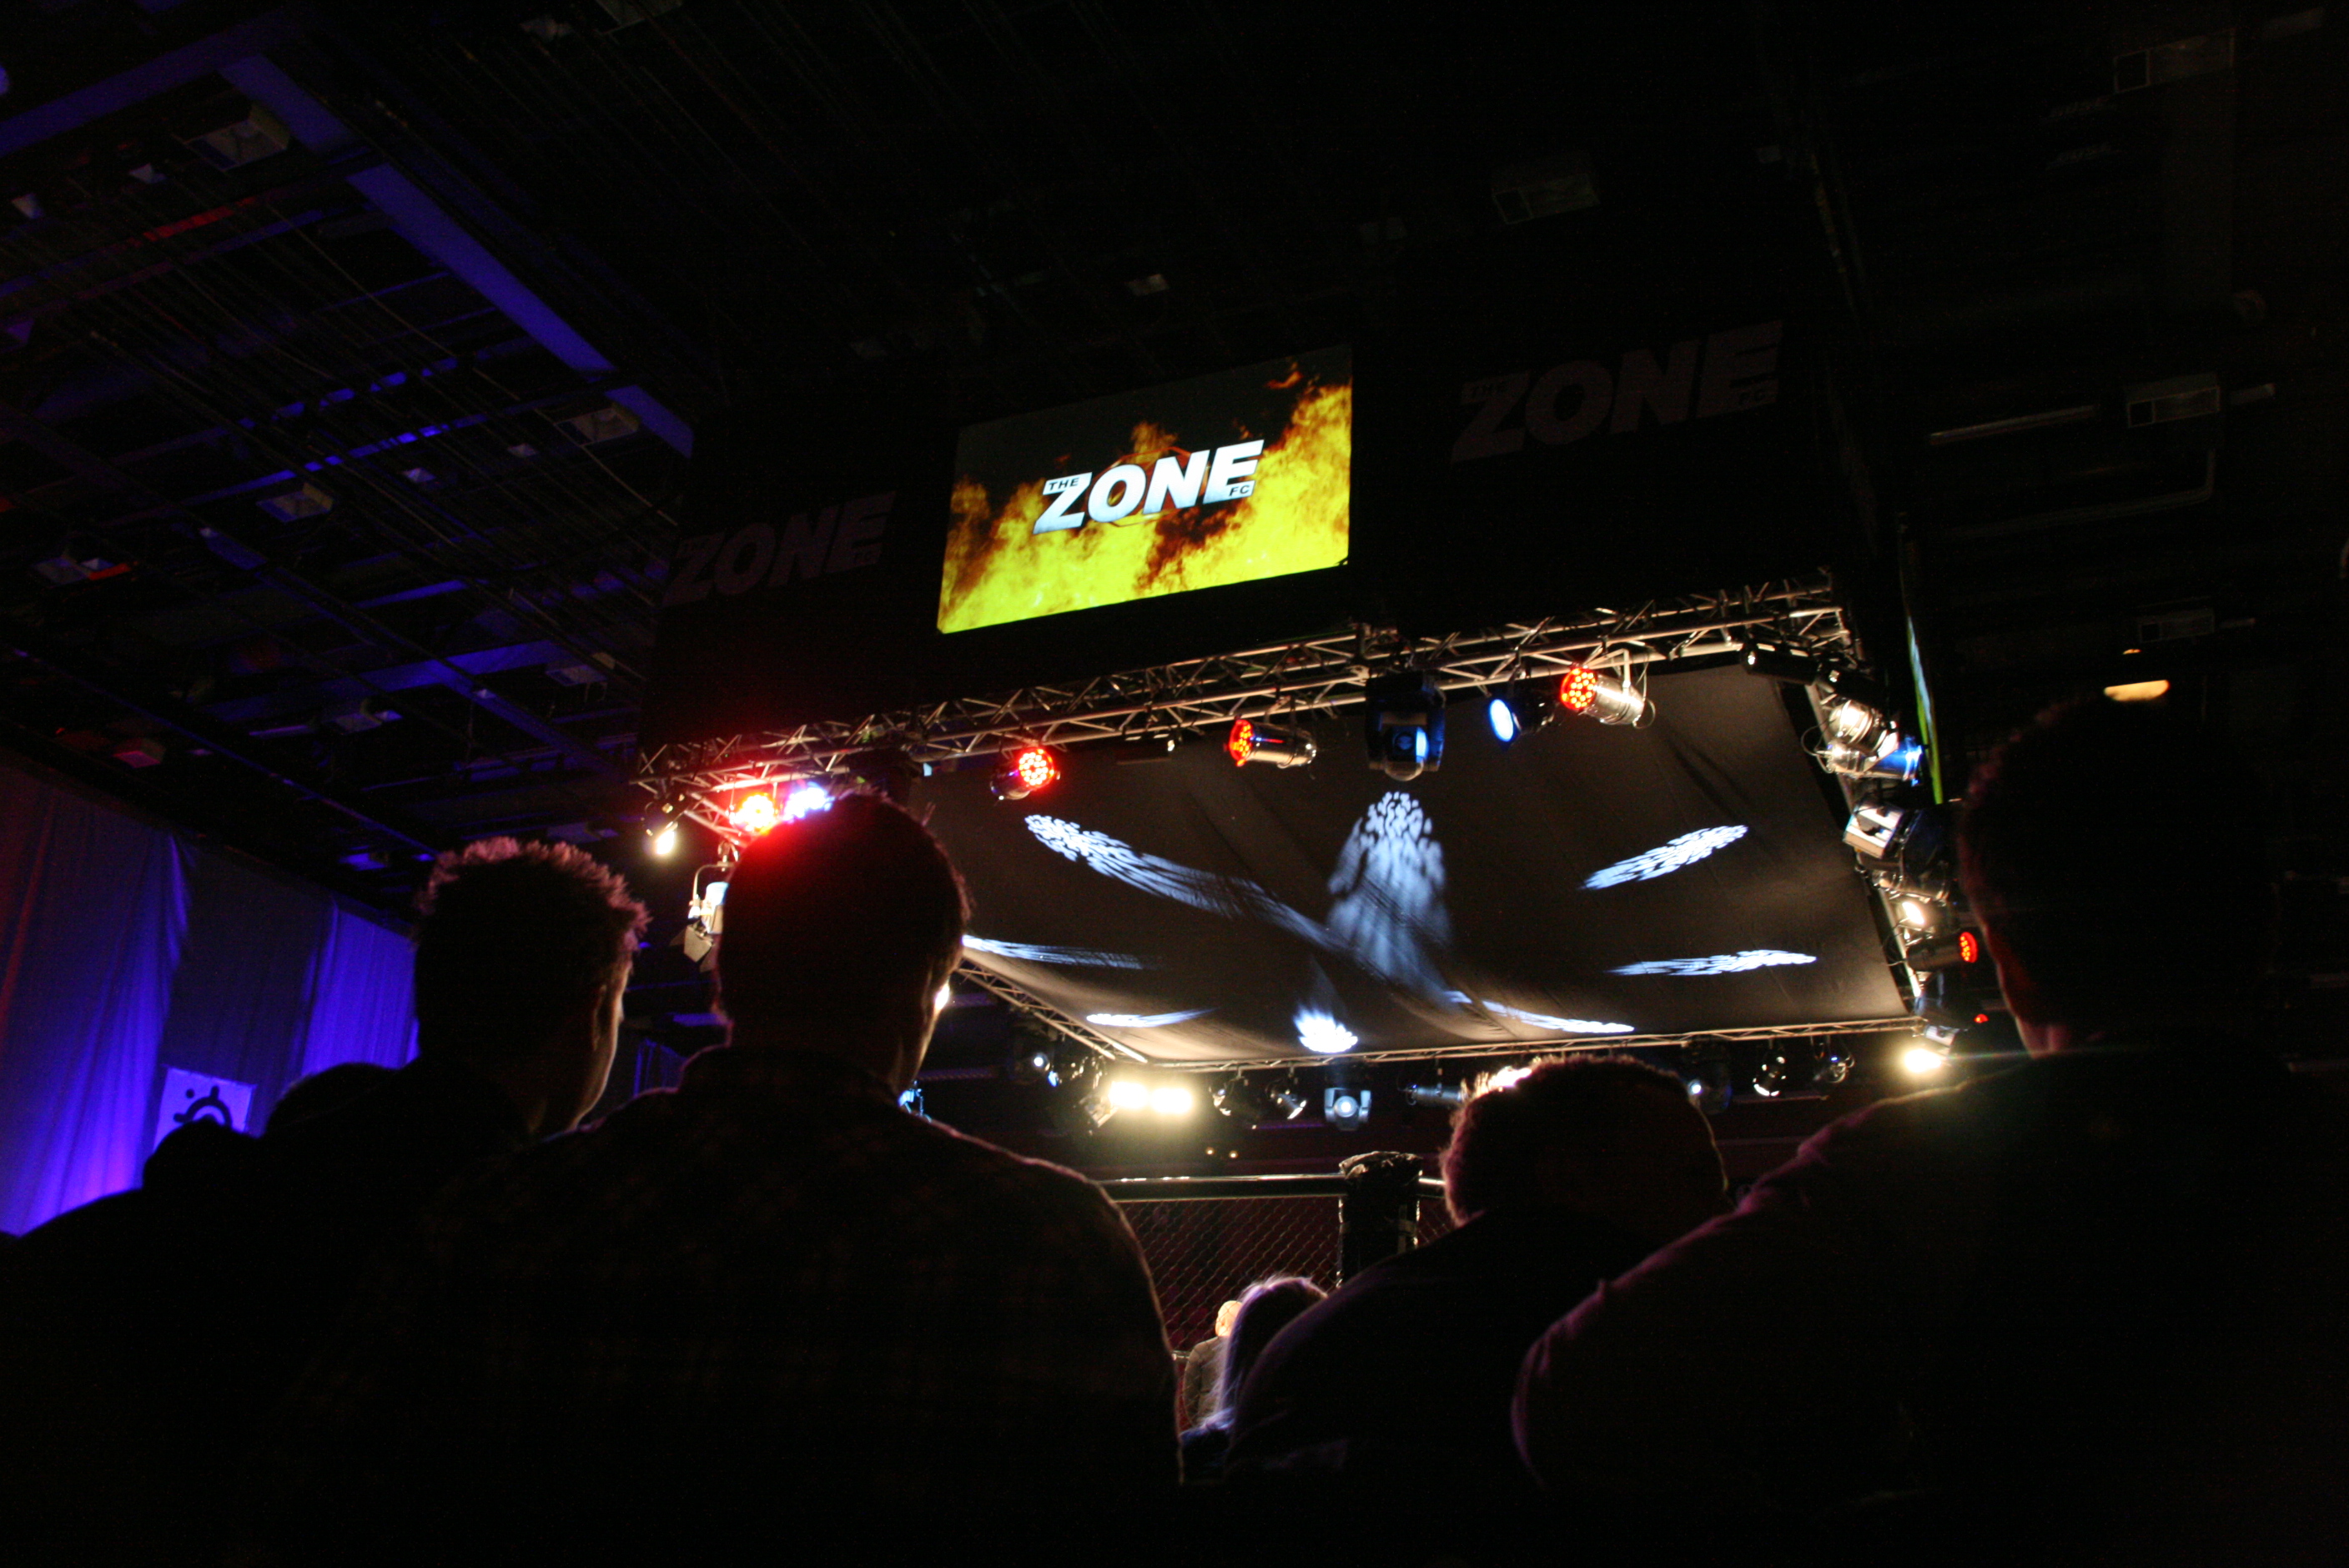 Drygt 2000 personer samlades under lördagskvällen i Lisebergshallen i Göteborg för MMA-galan The Zone FC 8 "Inferno".